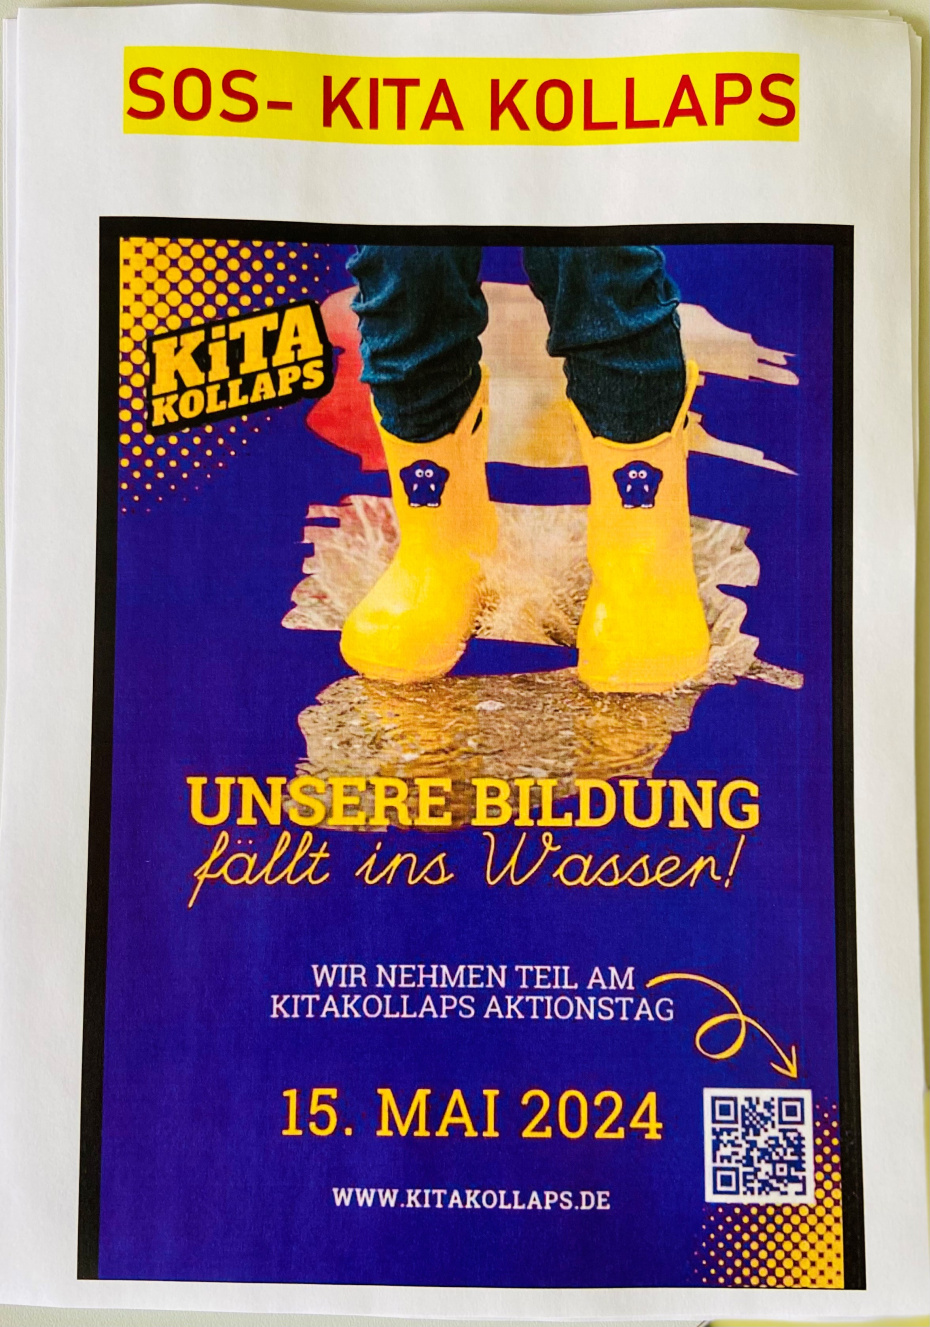 SOS- KITA KOLLAPS in Brandenburg 15.05.2024